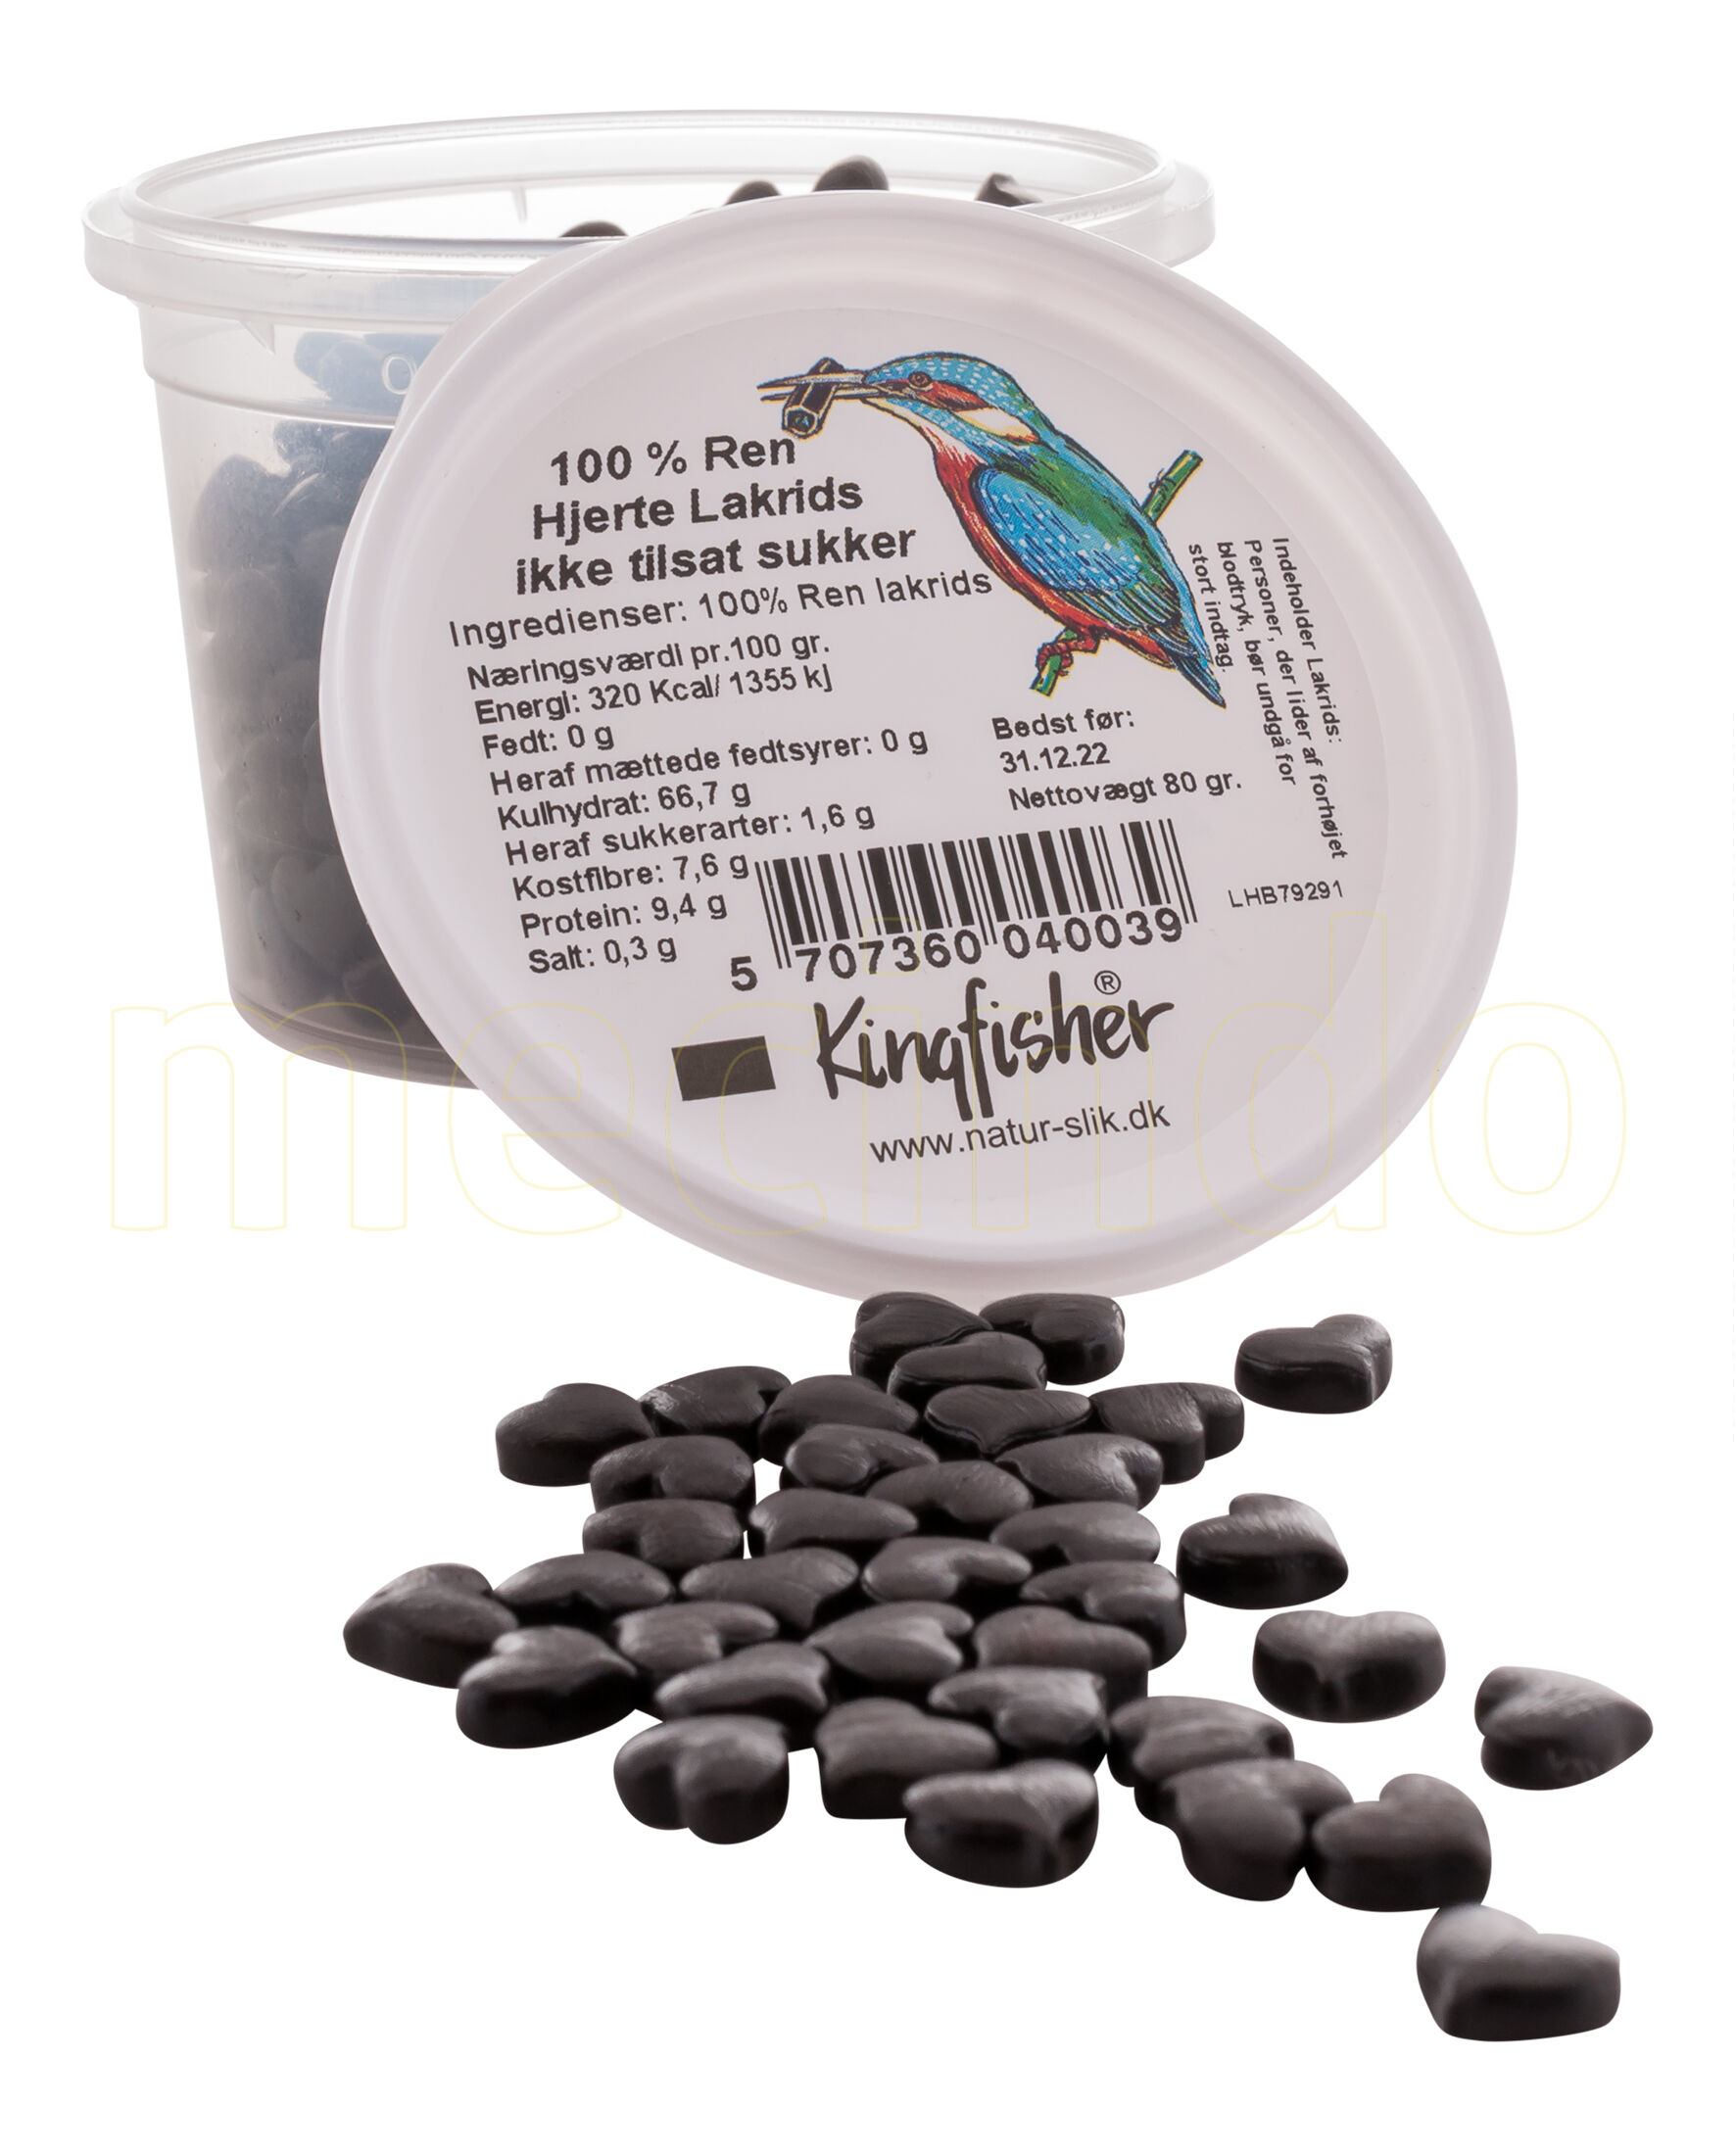 Kingfisher 100% Ren hjerte lakrids - 80 g